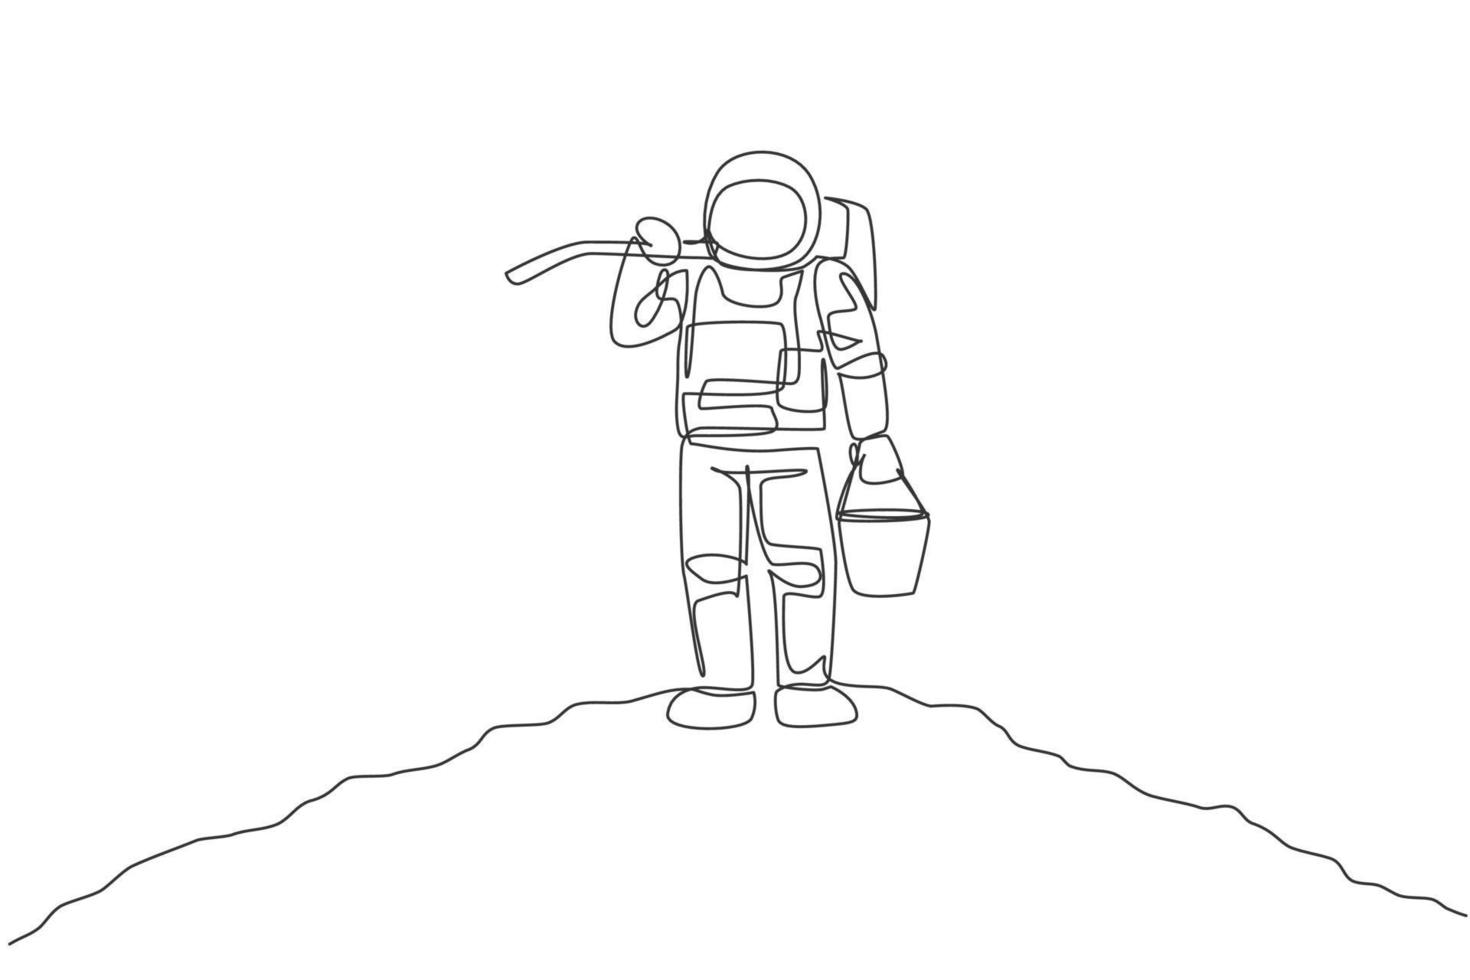 desenho de linha única contínua do cosmonauta carregando balde e enxada no ombro enquanto está na superfície da lua. conceito de vida agrícola do astronauta da galáxia. ilustração em vetor desenho desenho de uma linha na moda